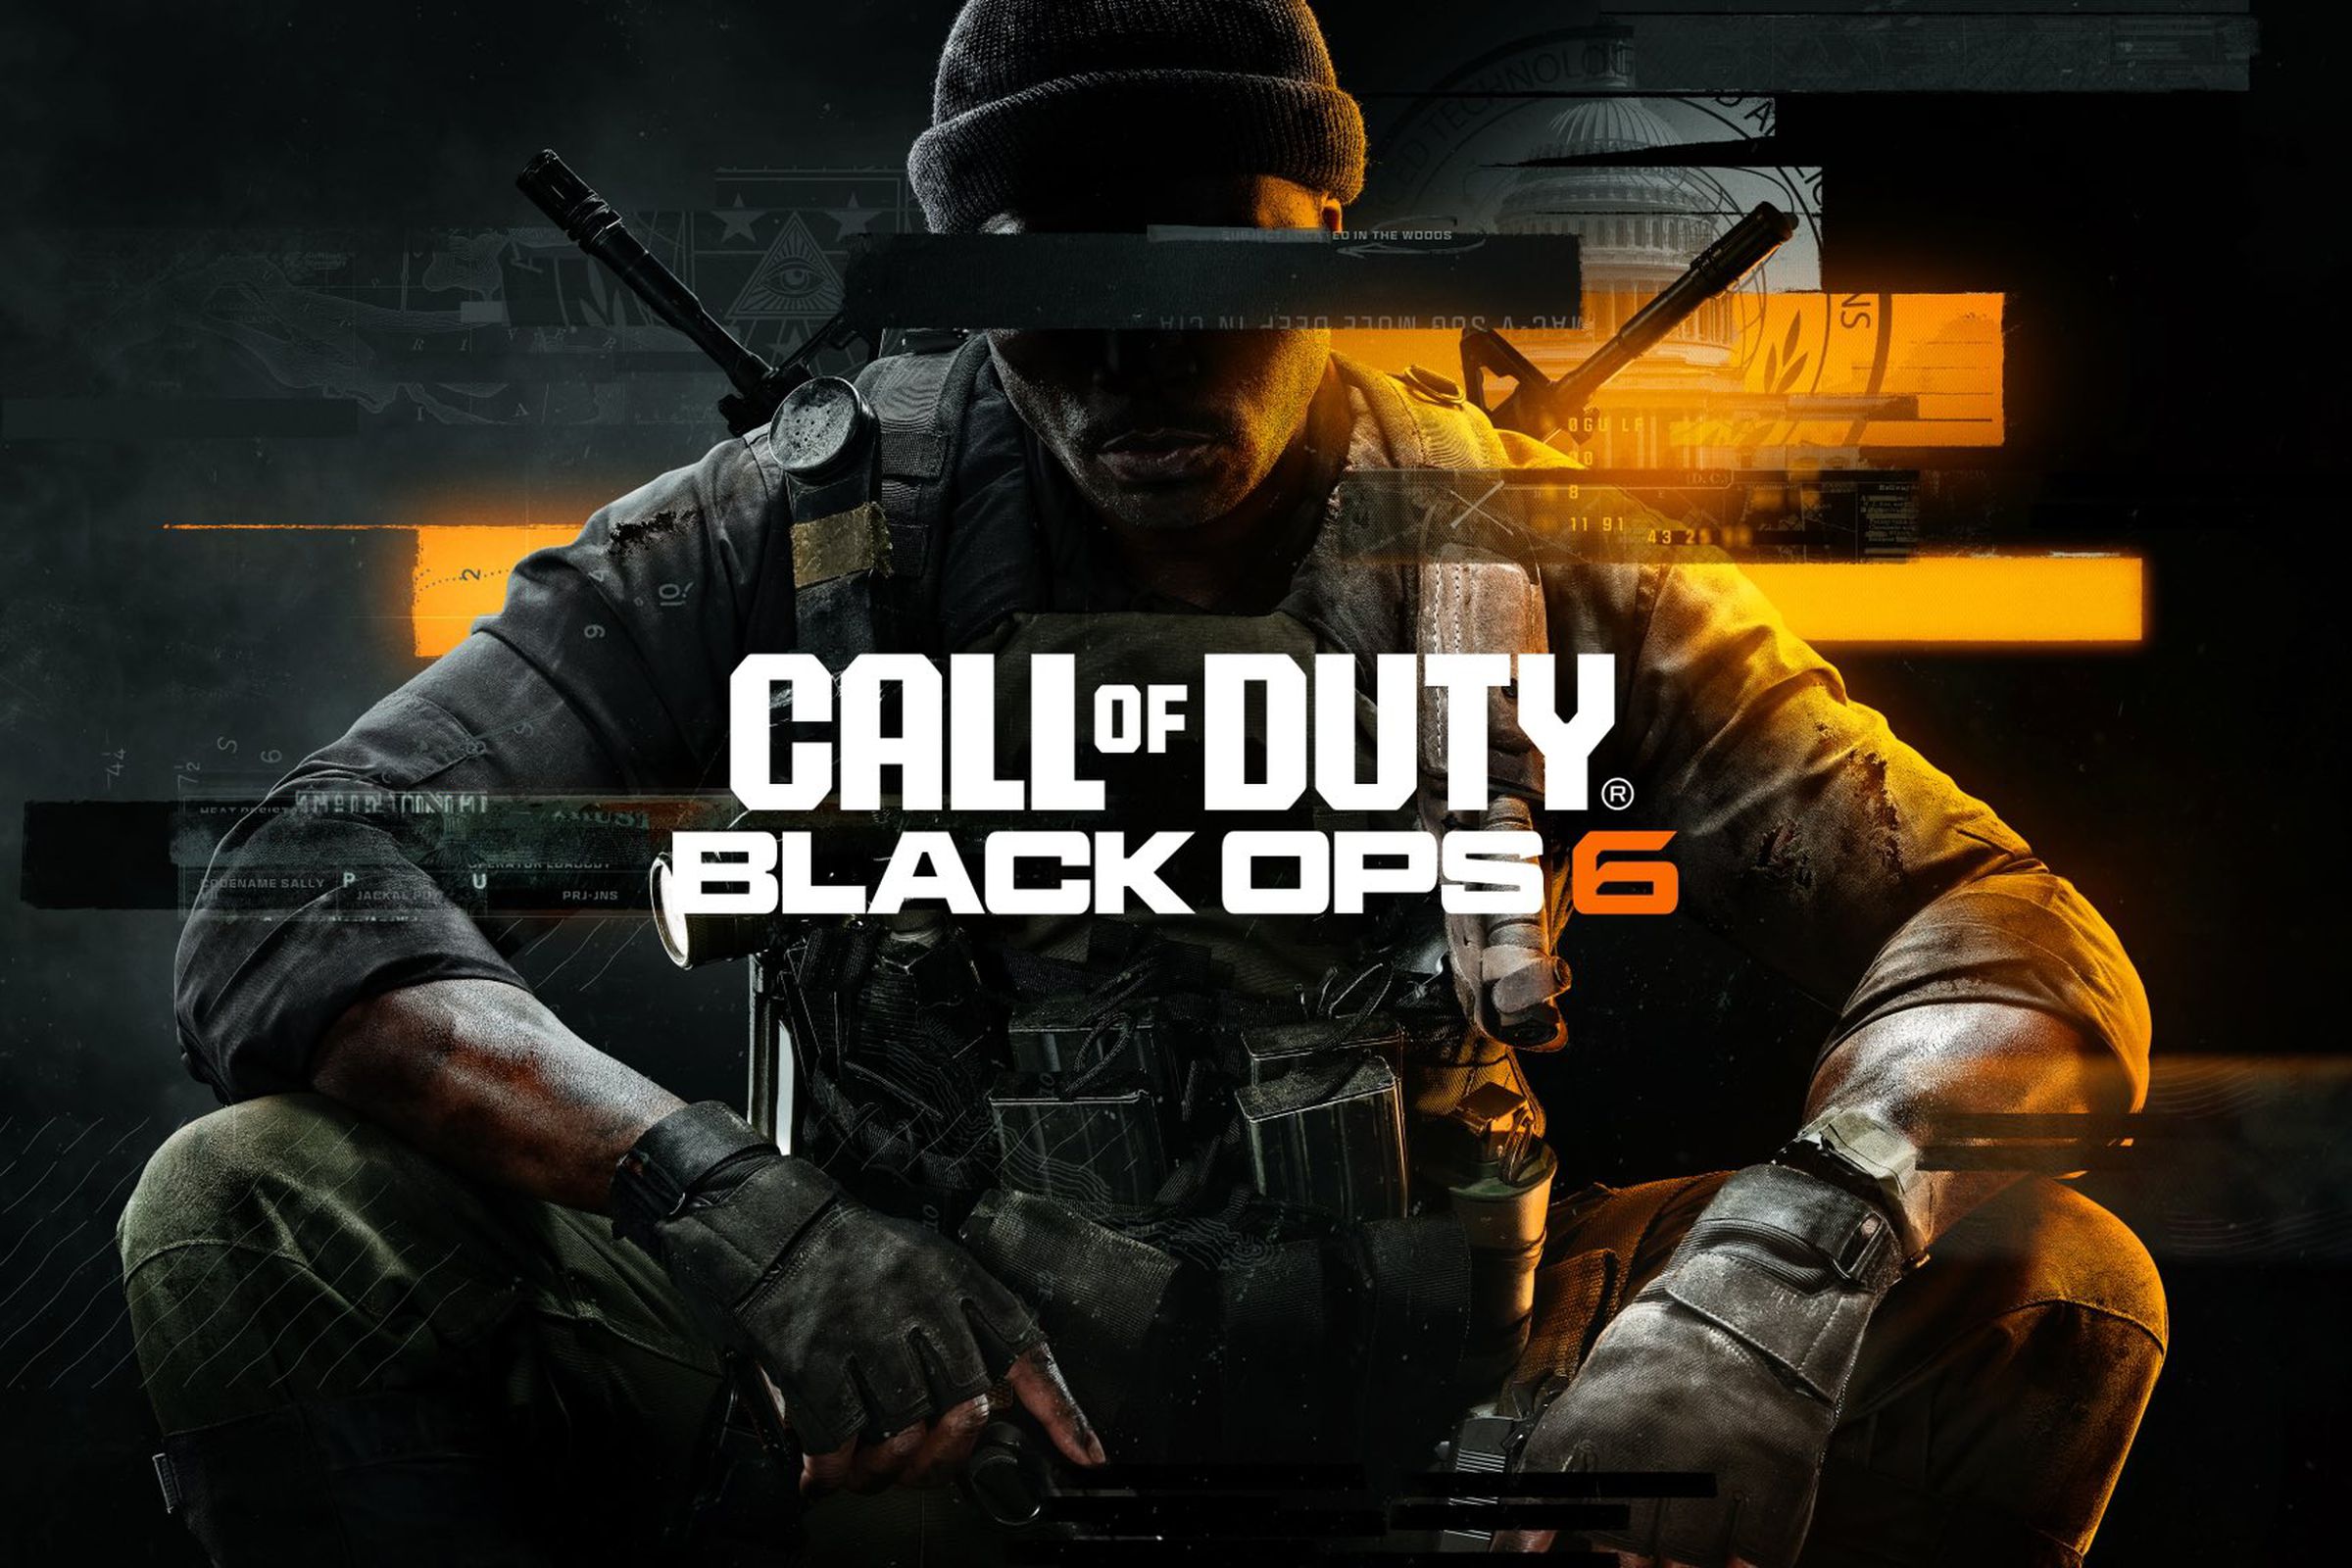 Illustration of Black Ops 6 game